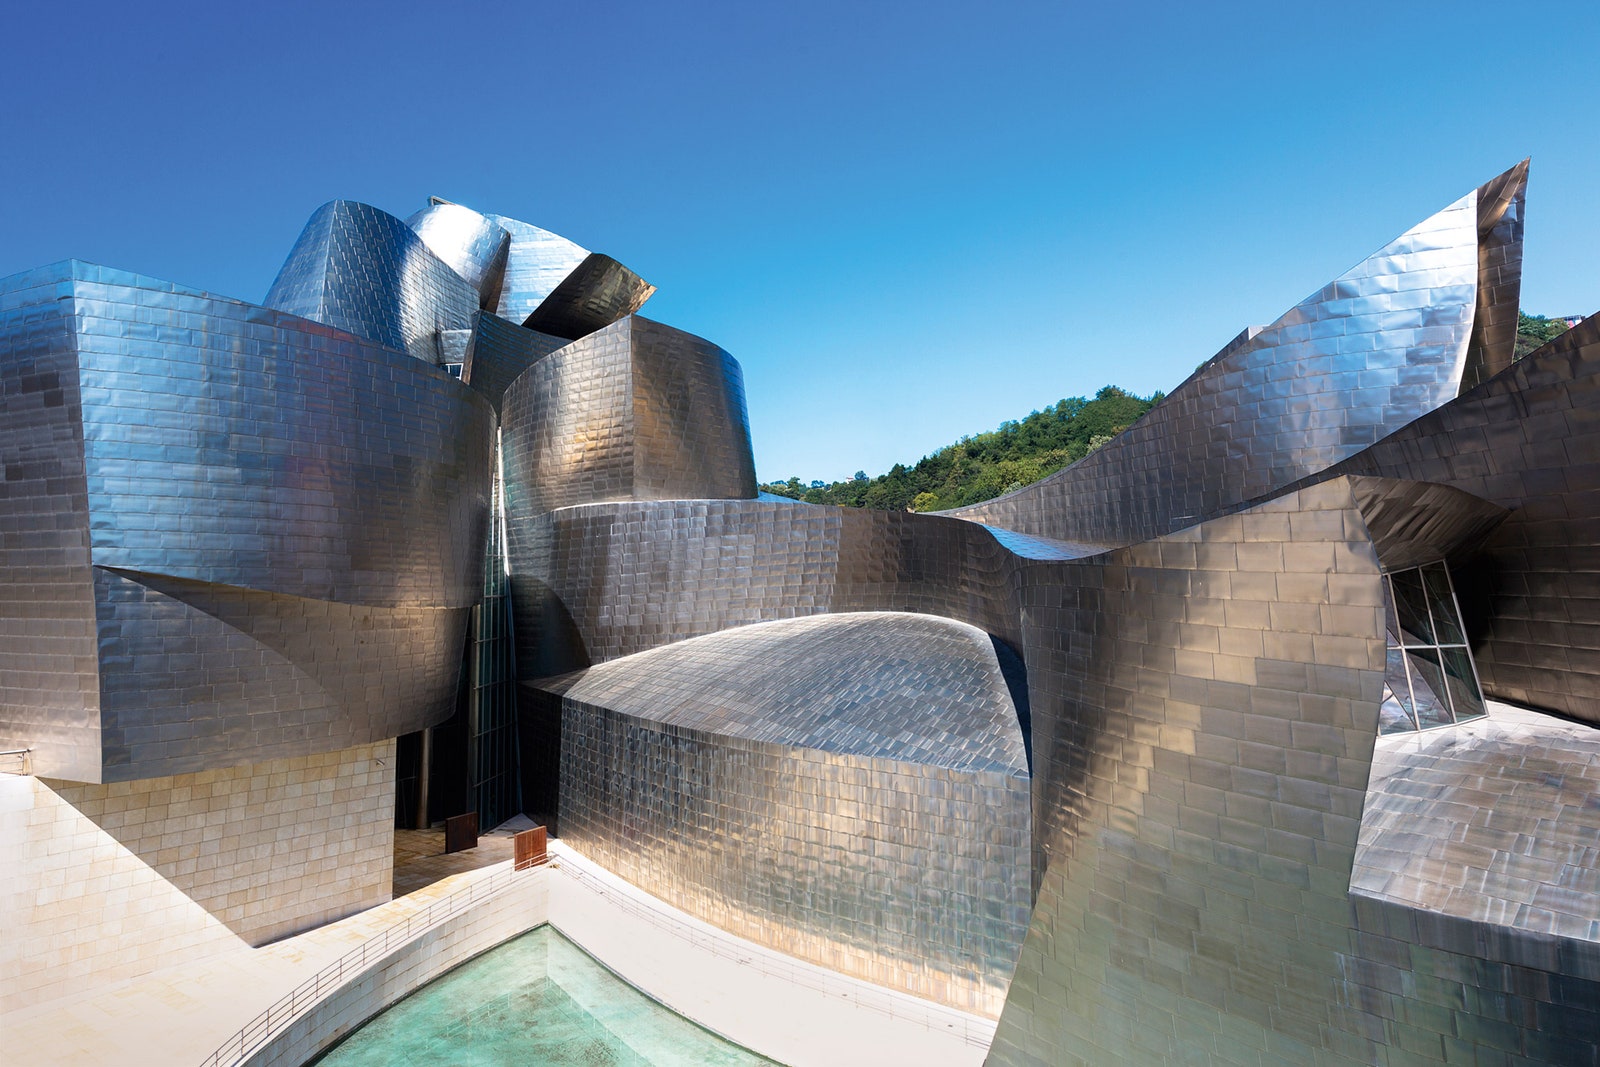 Здание Музея современного искусства в Бильбао было построено в 1997 году и принесло архитектору славу.